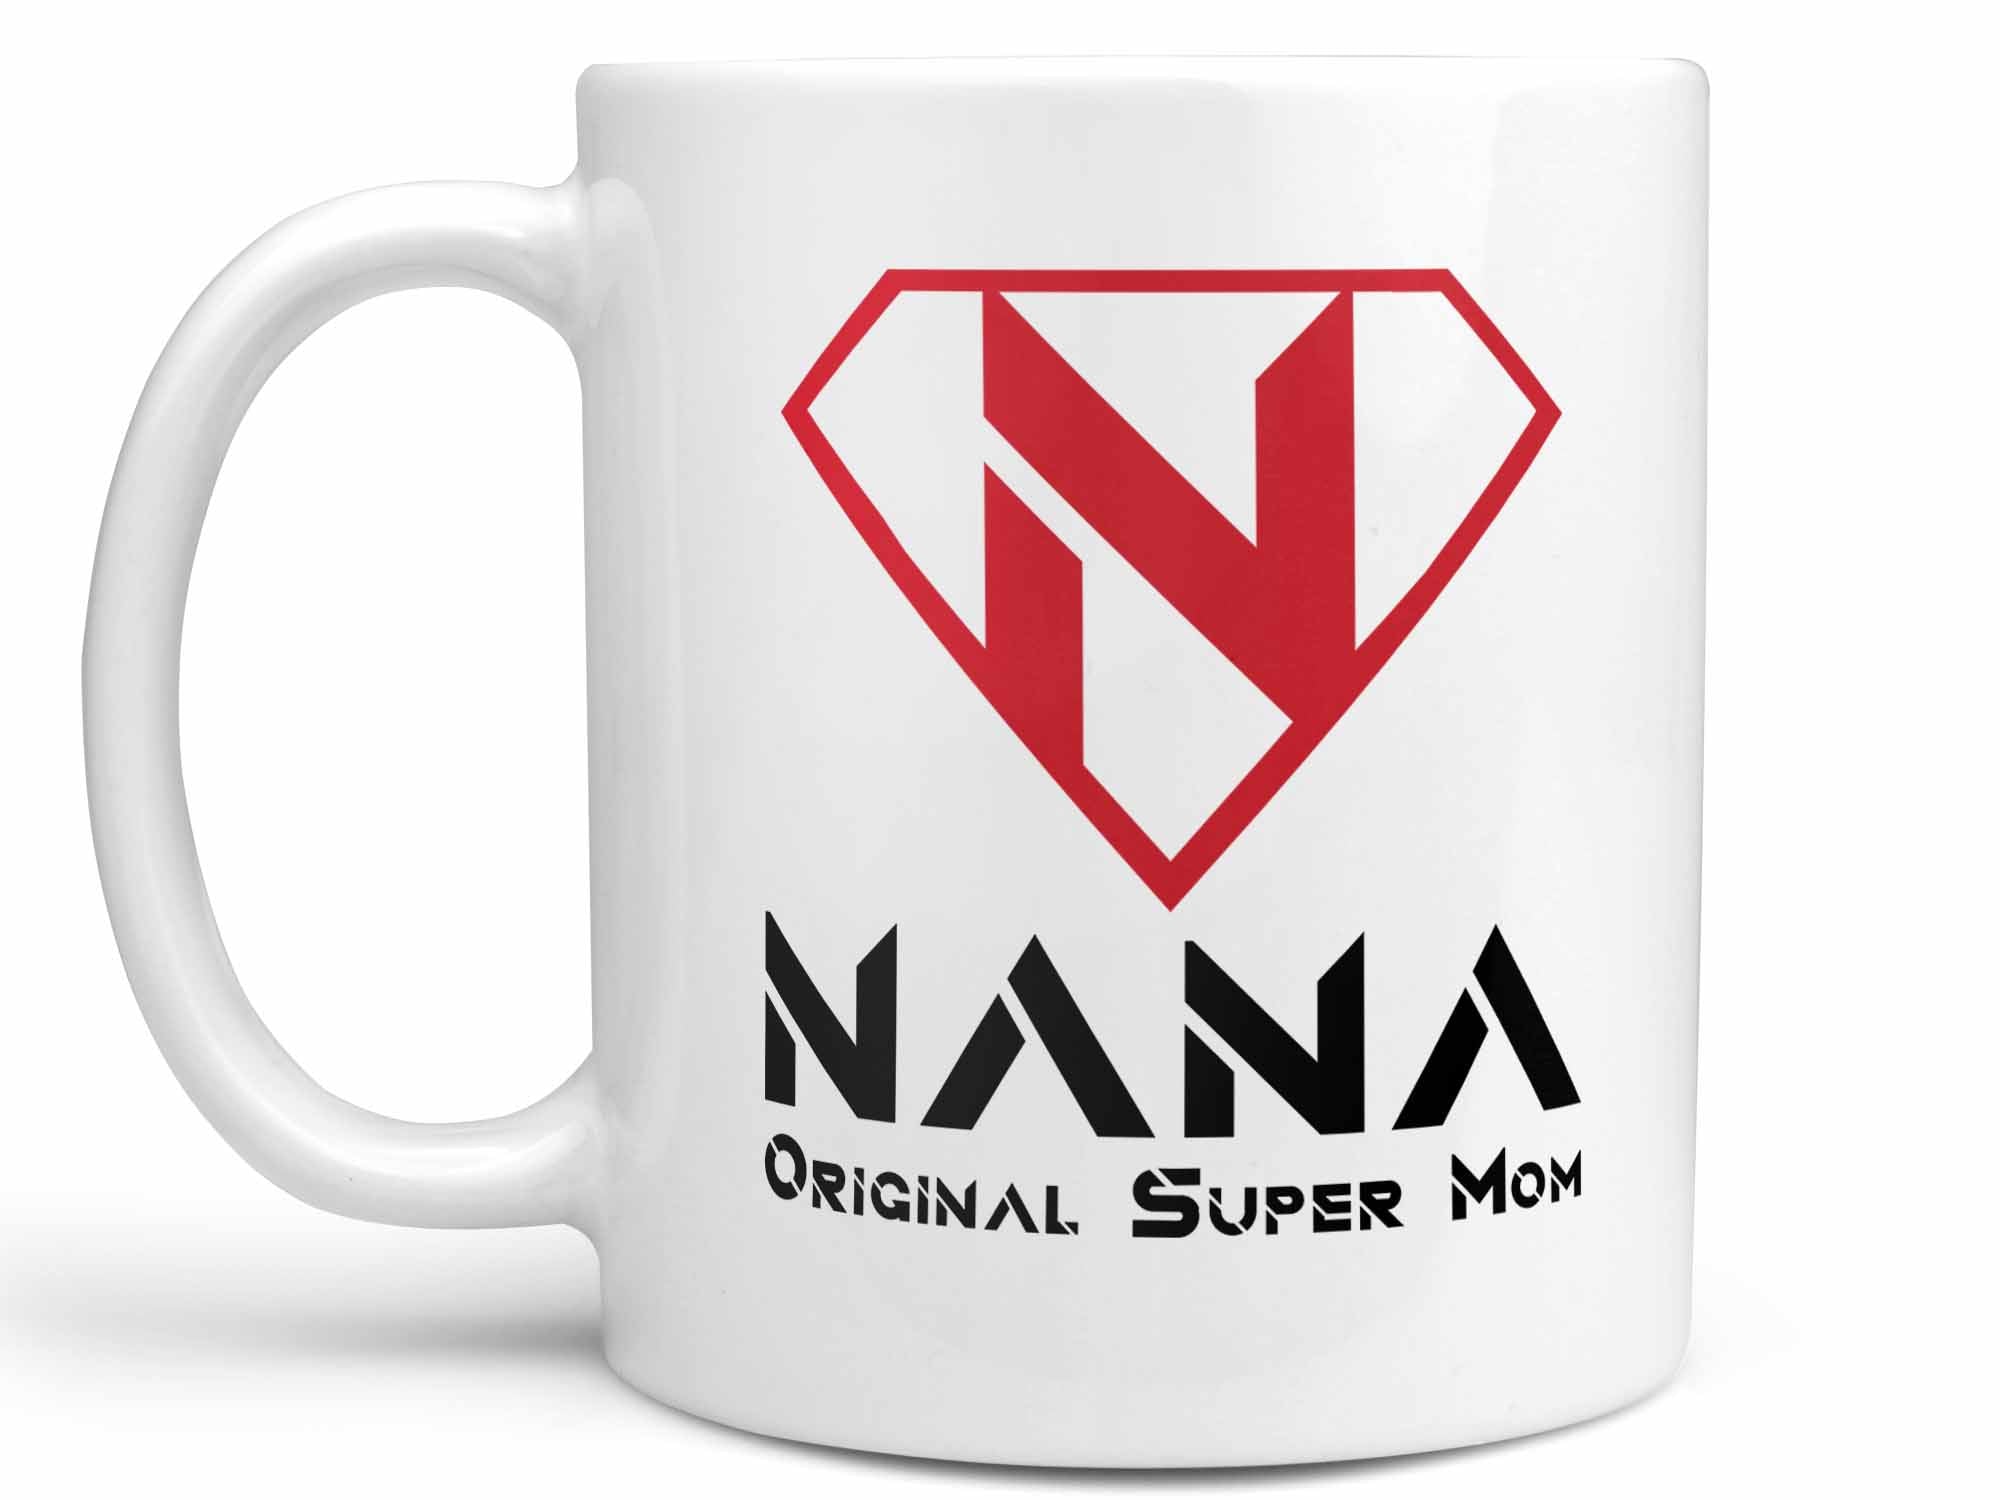 Nana Original Super Mom Coffee Mug